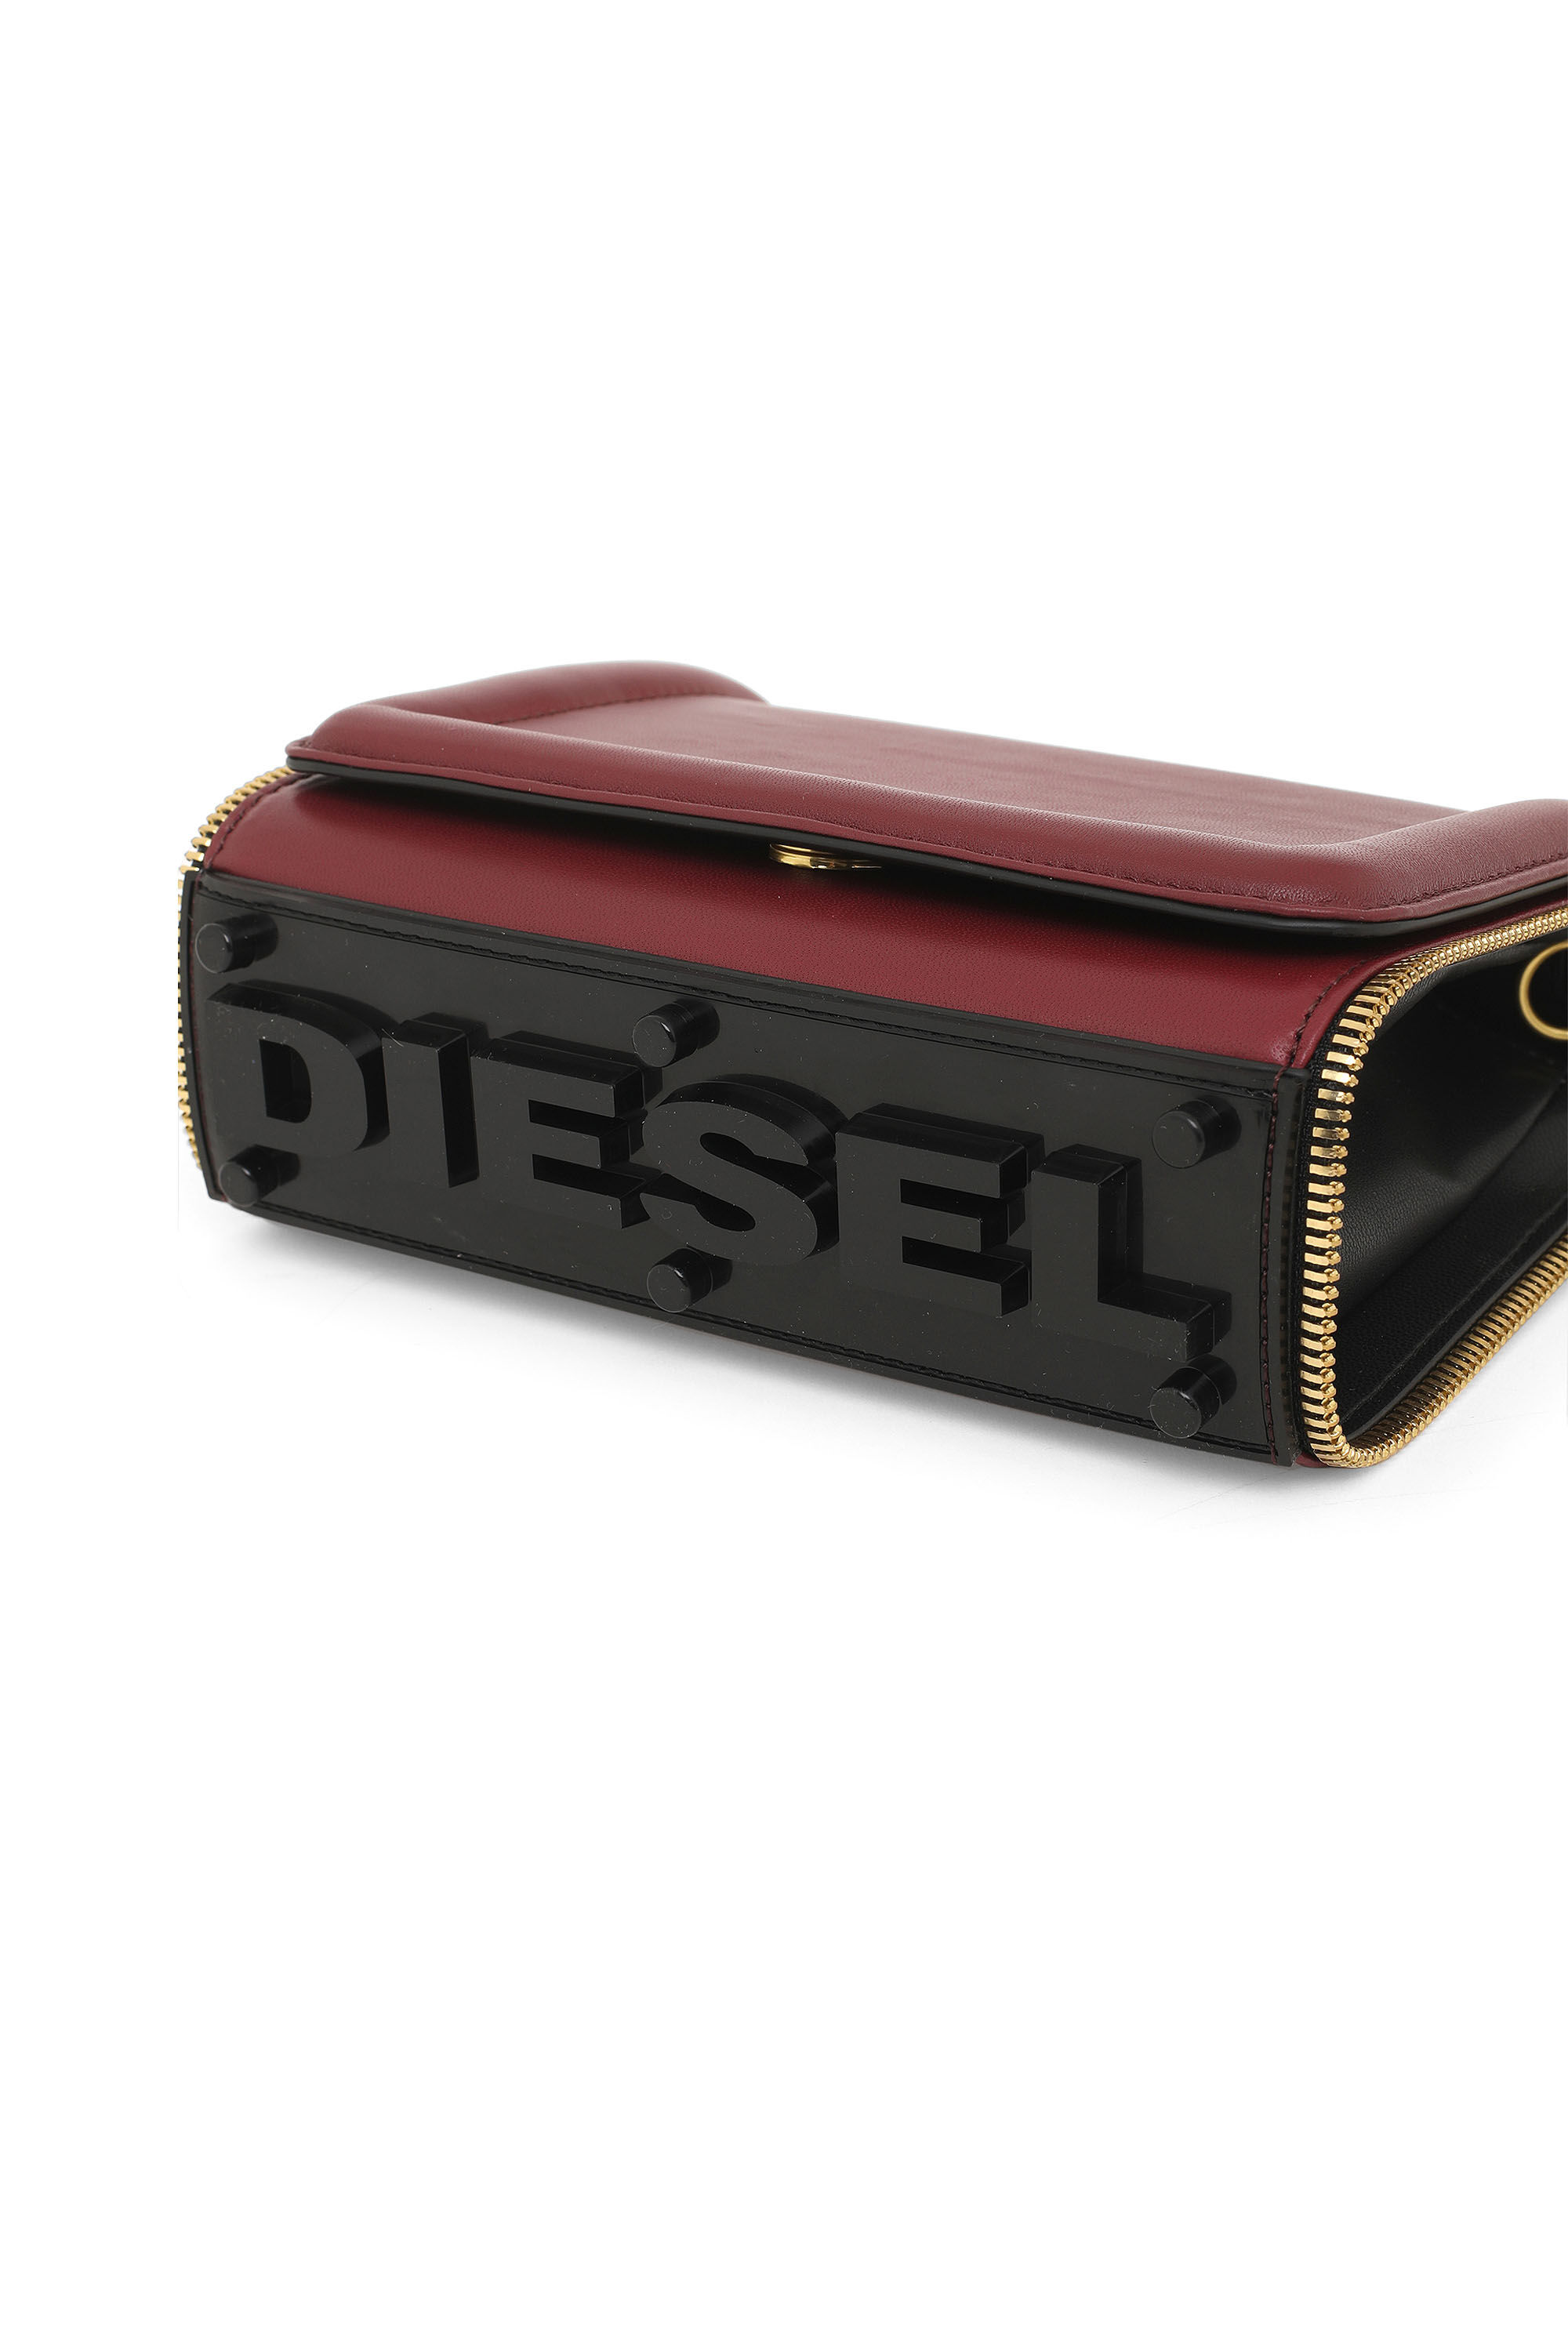 Diesel - YBYS S, Burdeos - Image 6